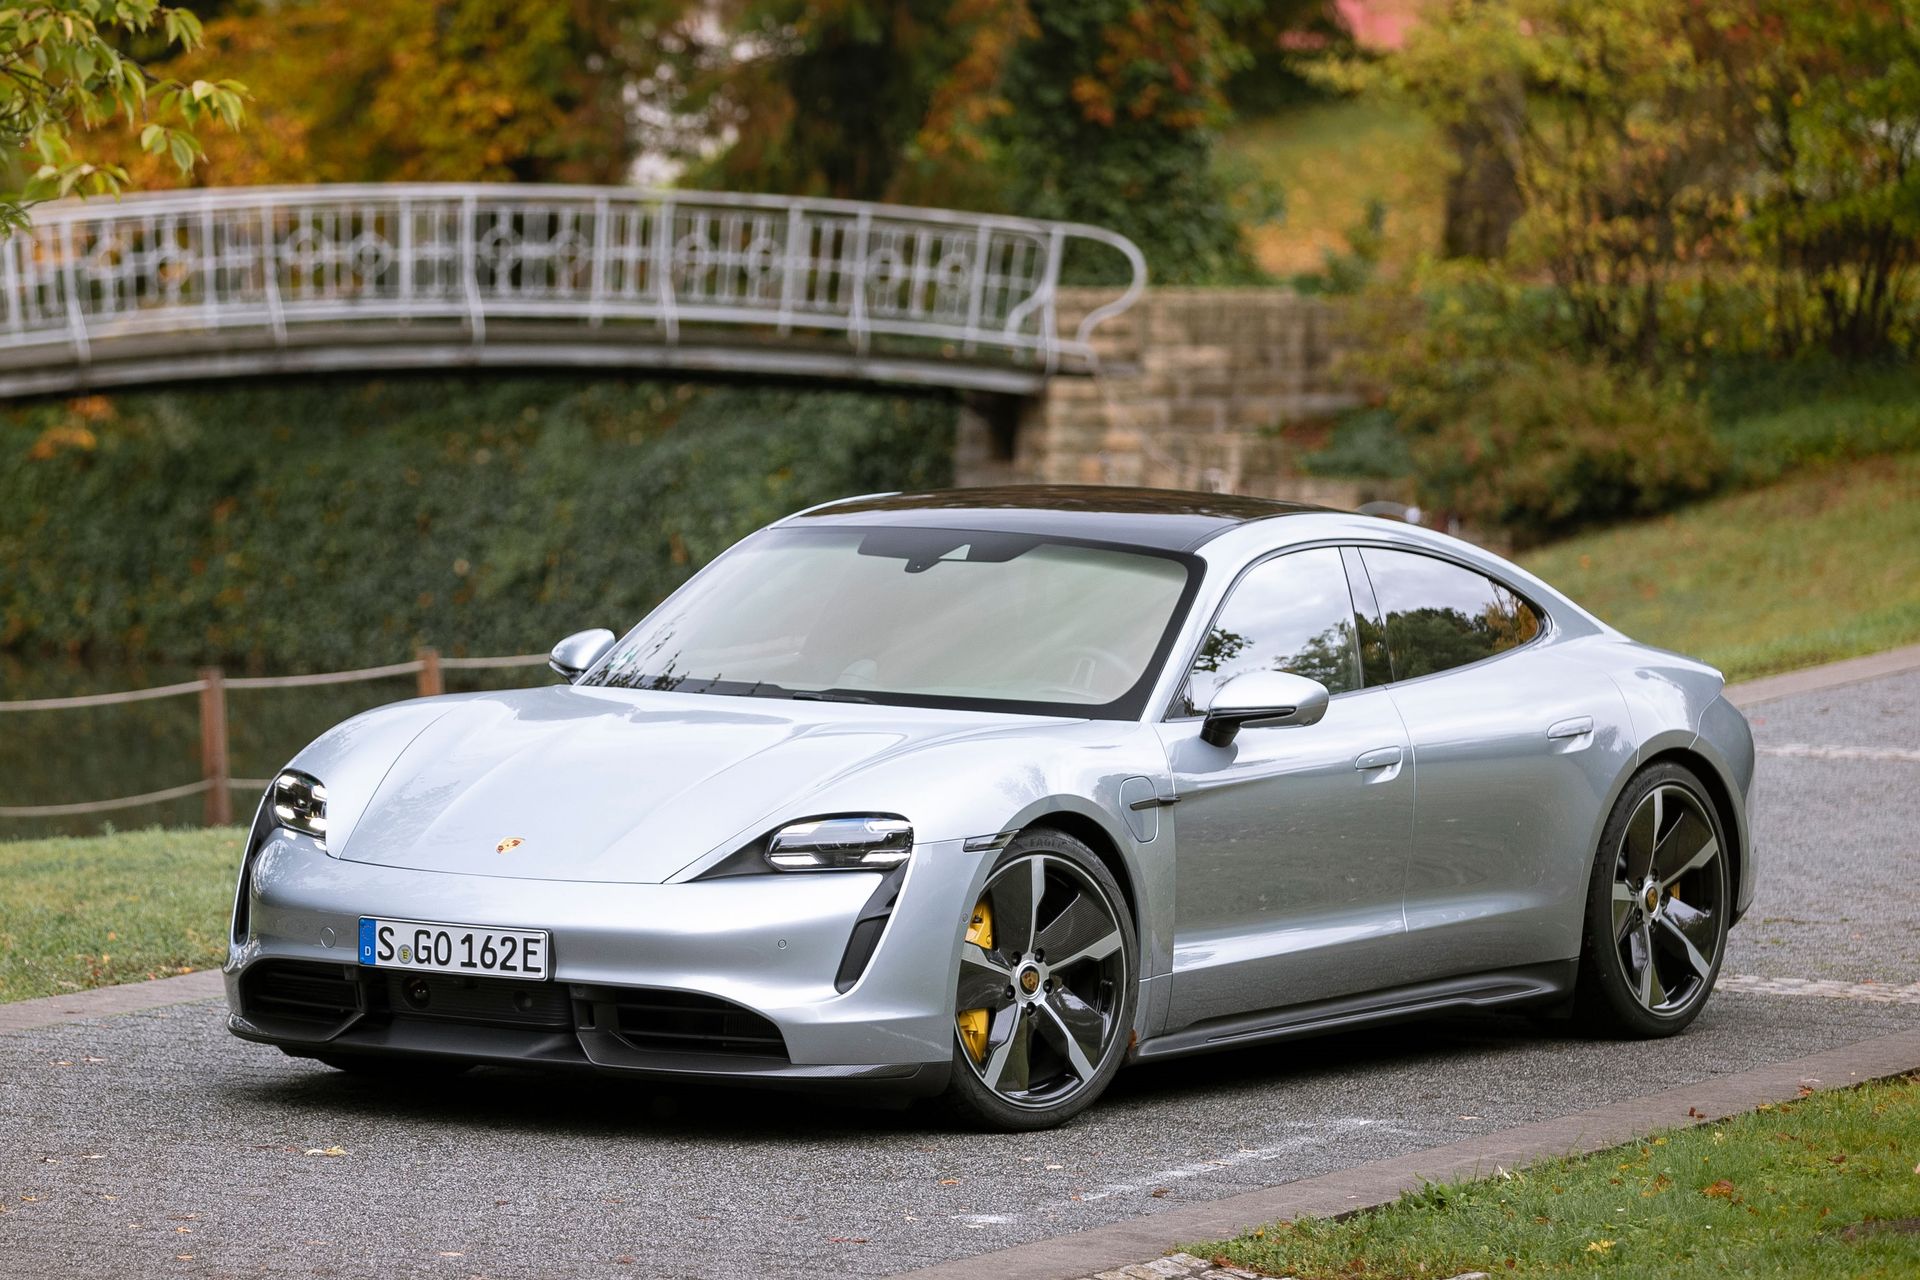 Voiture électrique : Porsche tente t-il de cacher des problèmes de batteries ?